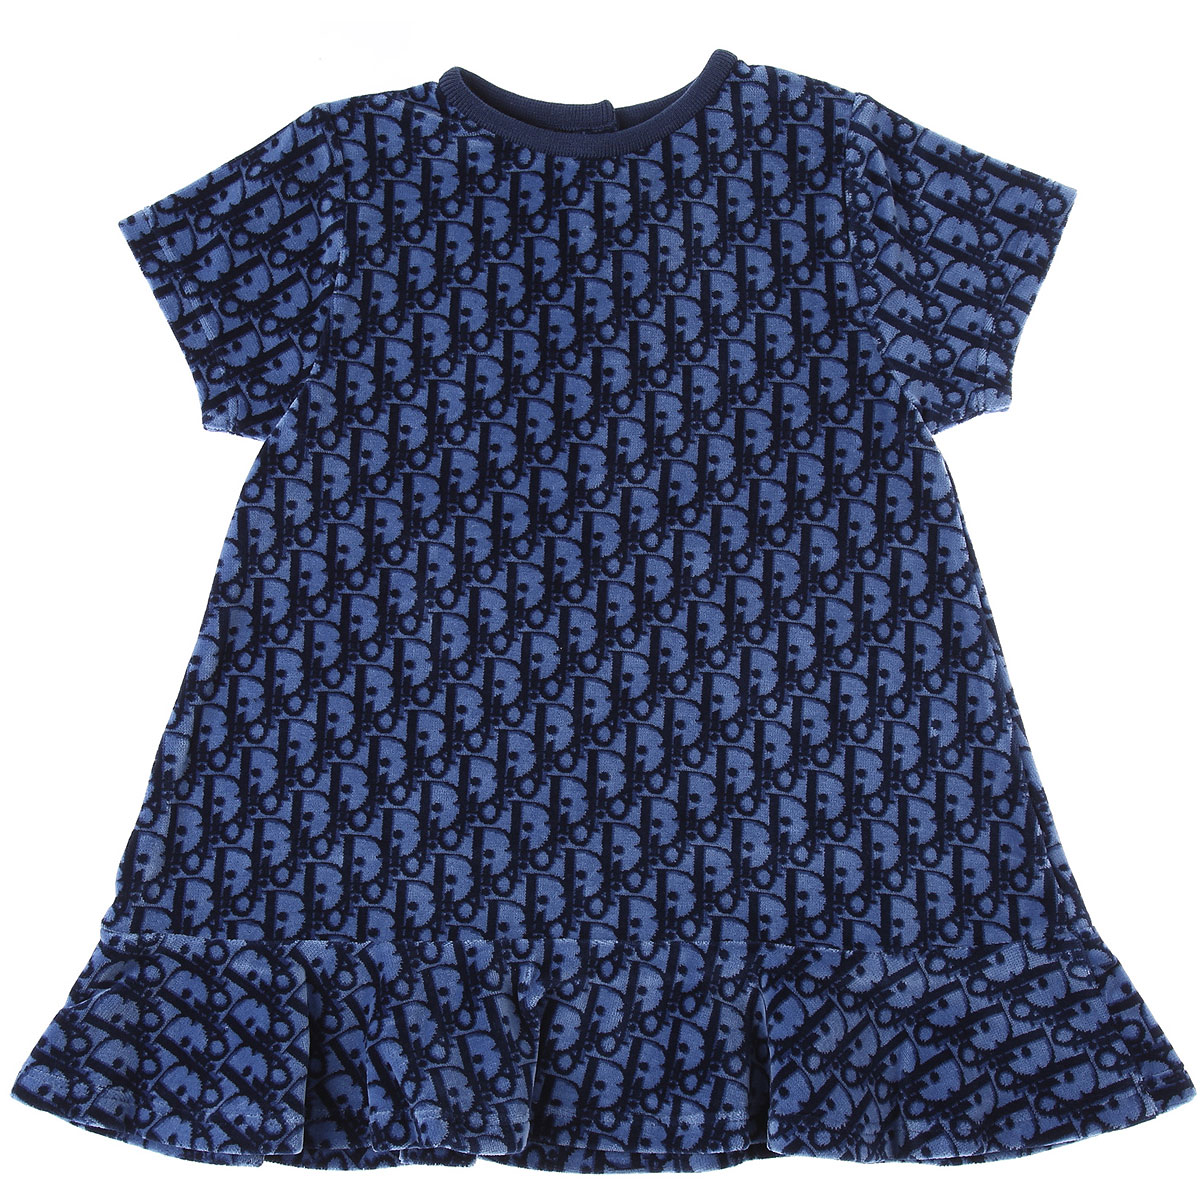 Baby Dior Baby Kleid für Mädchen Günstig im Sale, Variation von Blau, Baumwolle, 2017, 18M 2Y